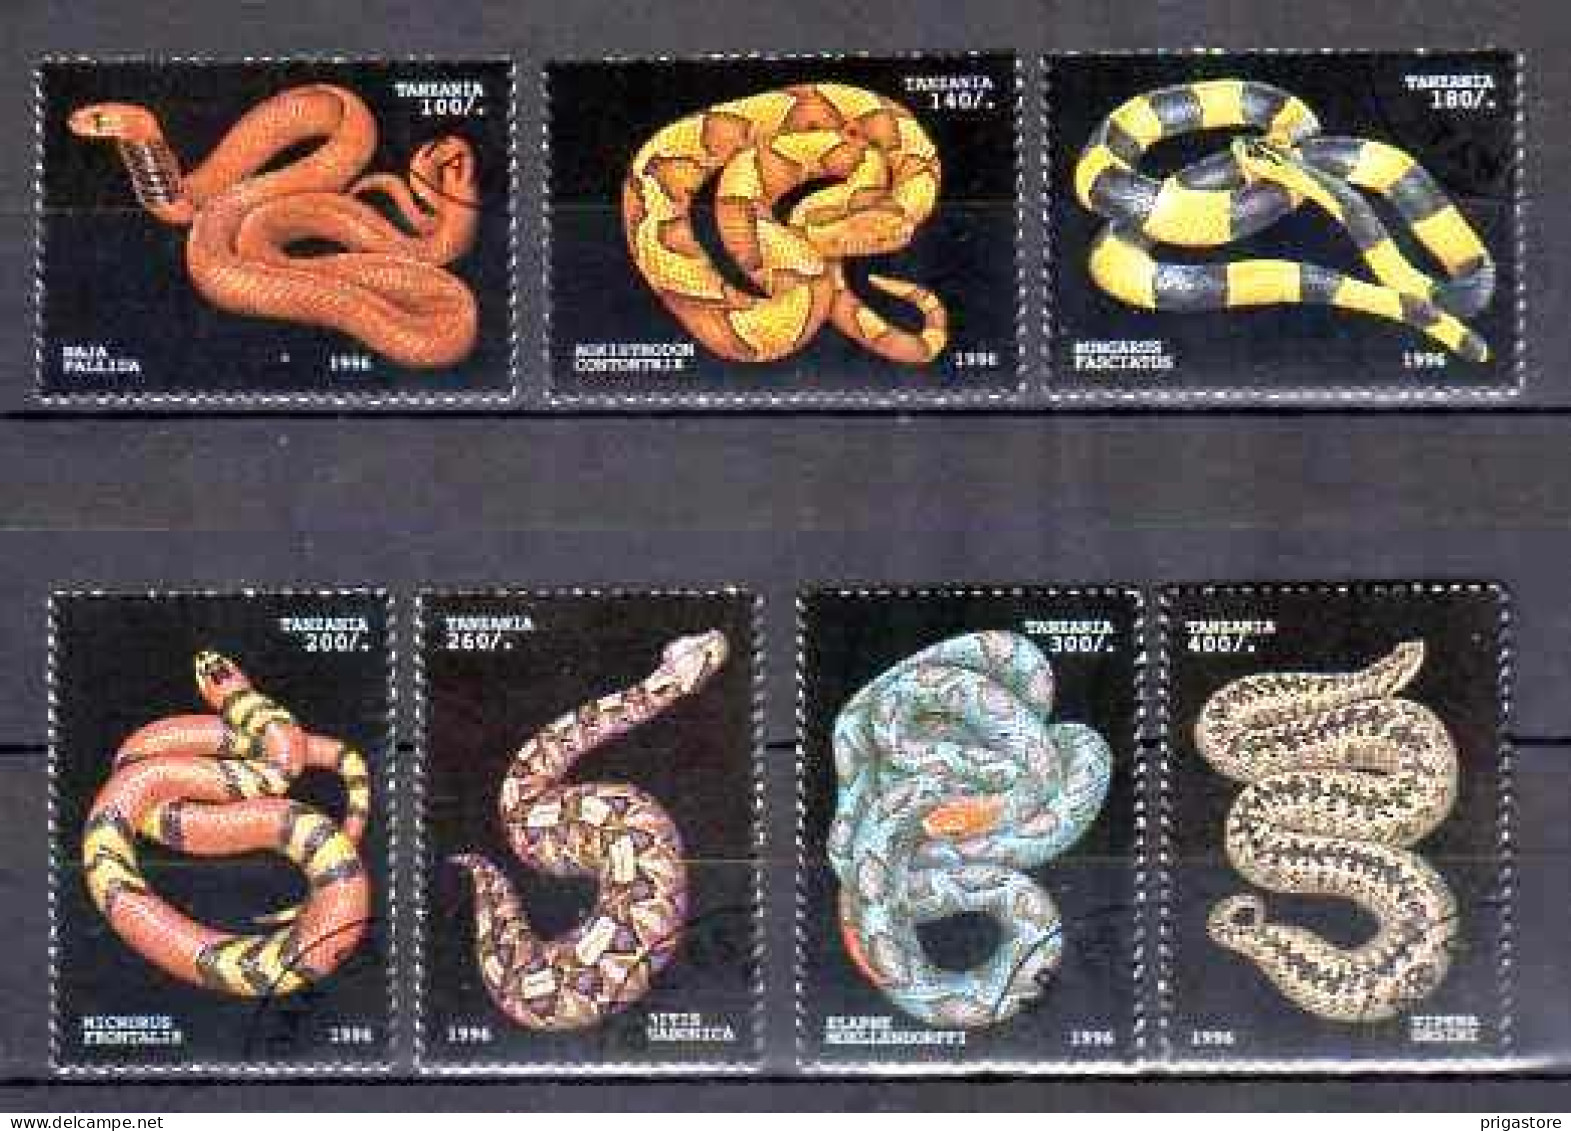 Animaux Serpents Tanzanie 1996 (48) Yvert N° 1969 à 1975 Oblitérés Used - Schlangen